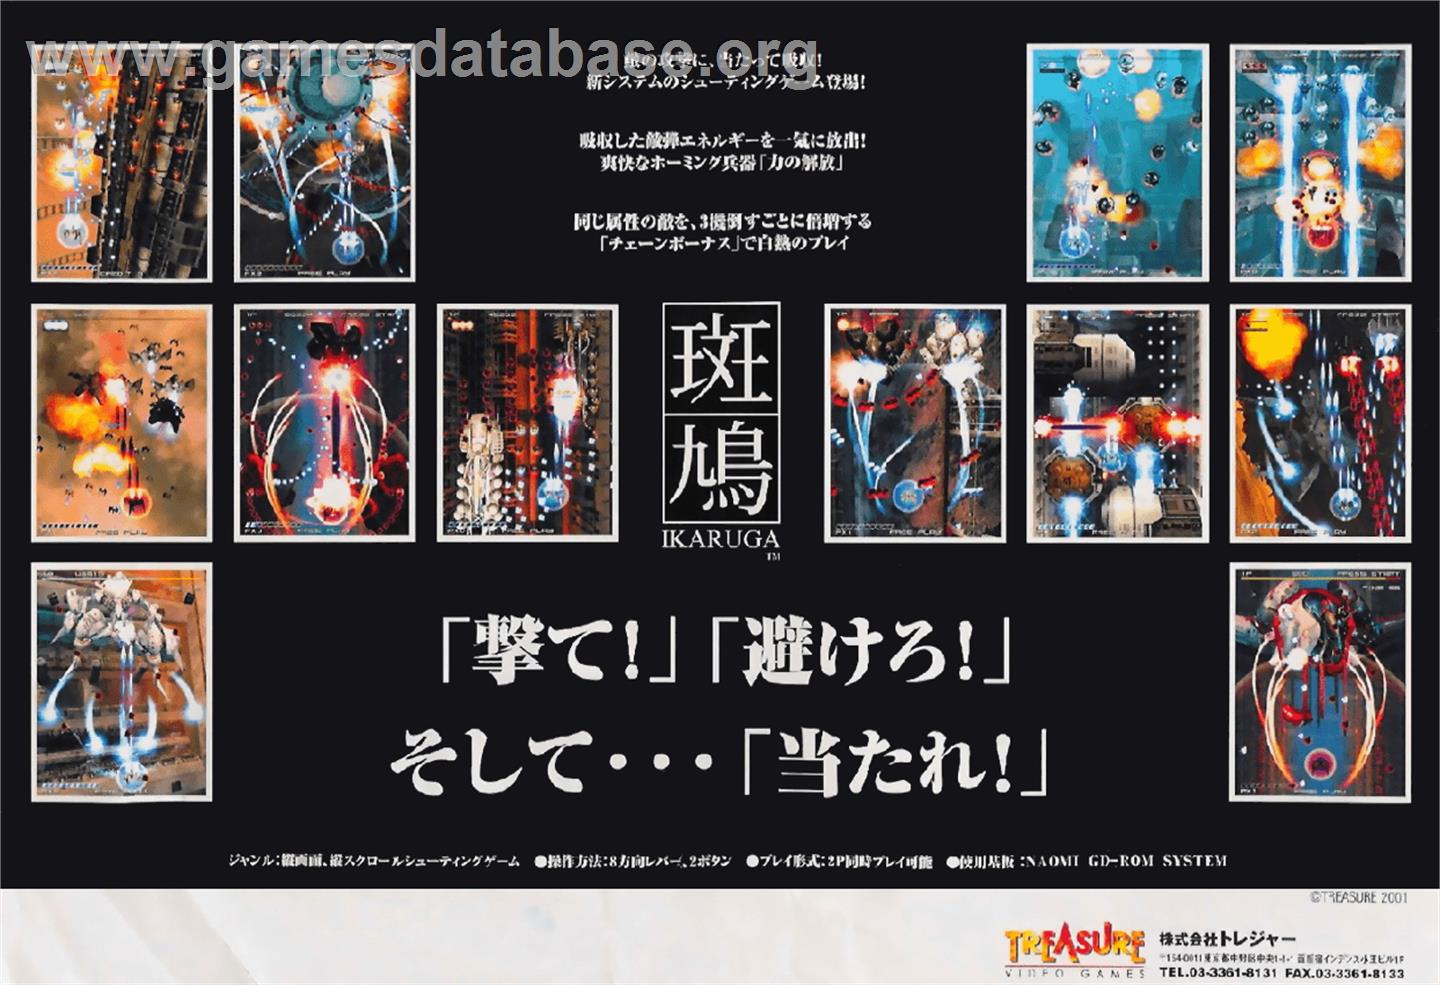 Ikaruga - Arcade - Artwork - Advert